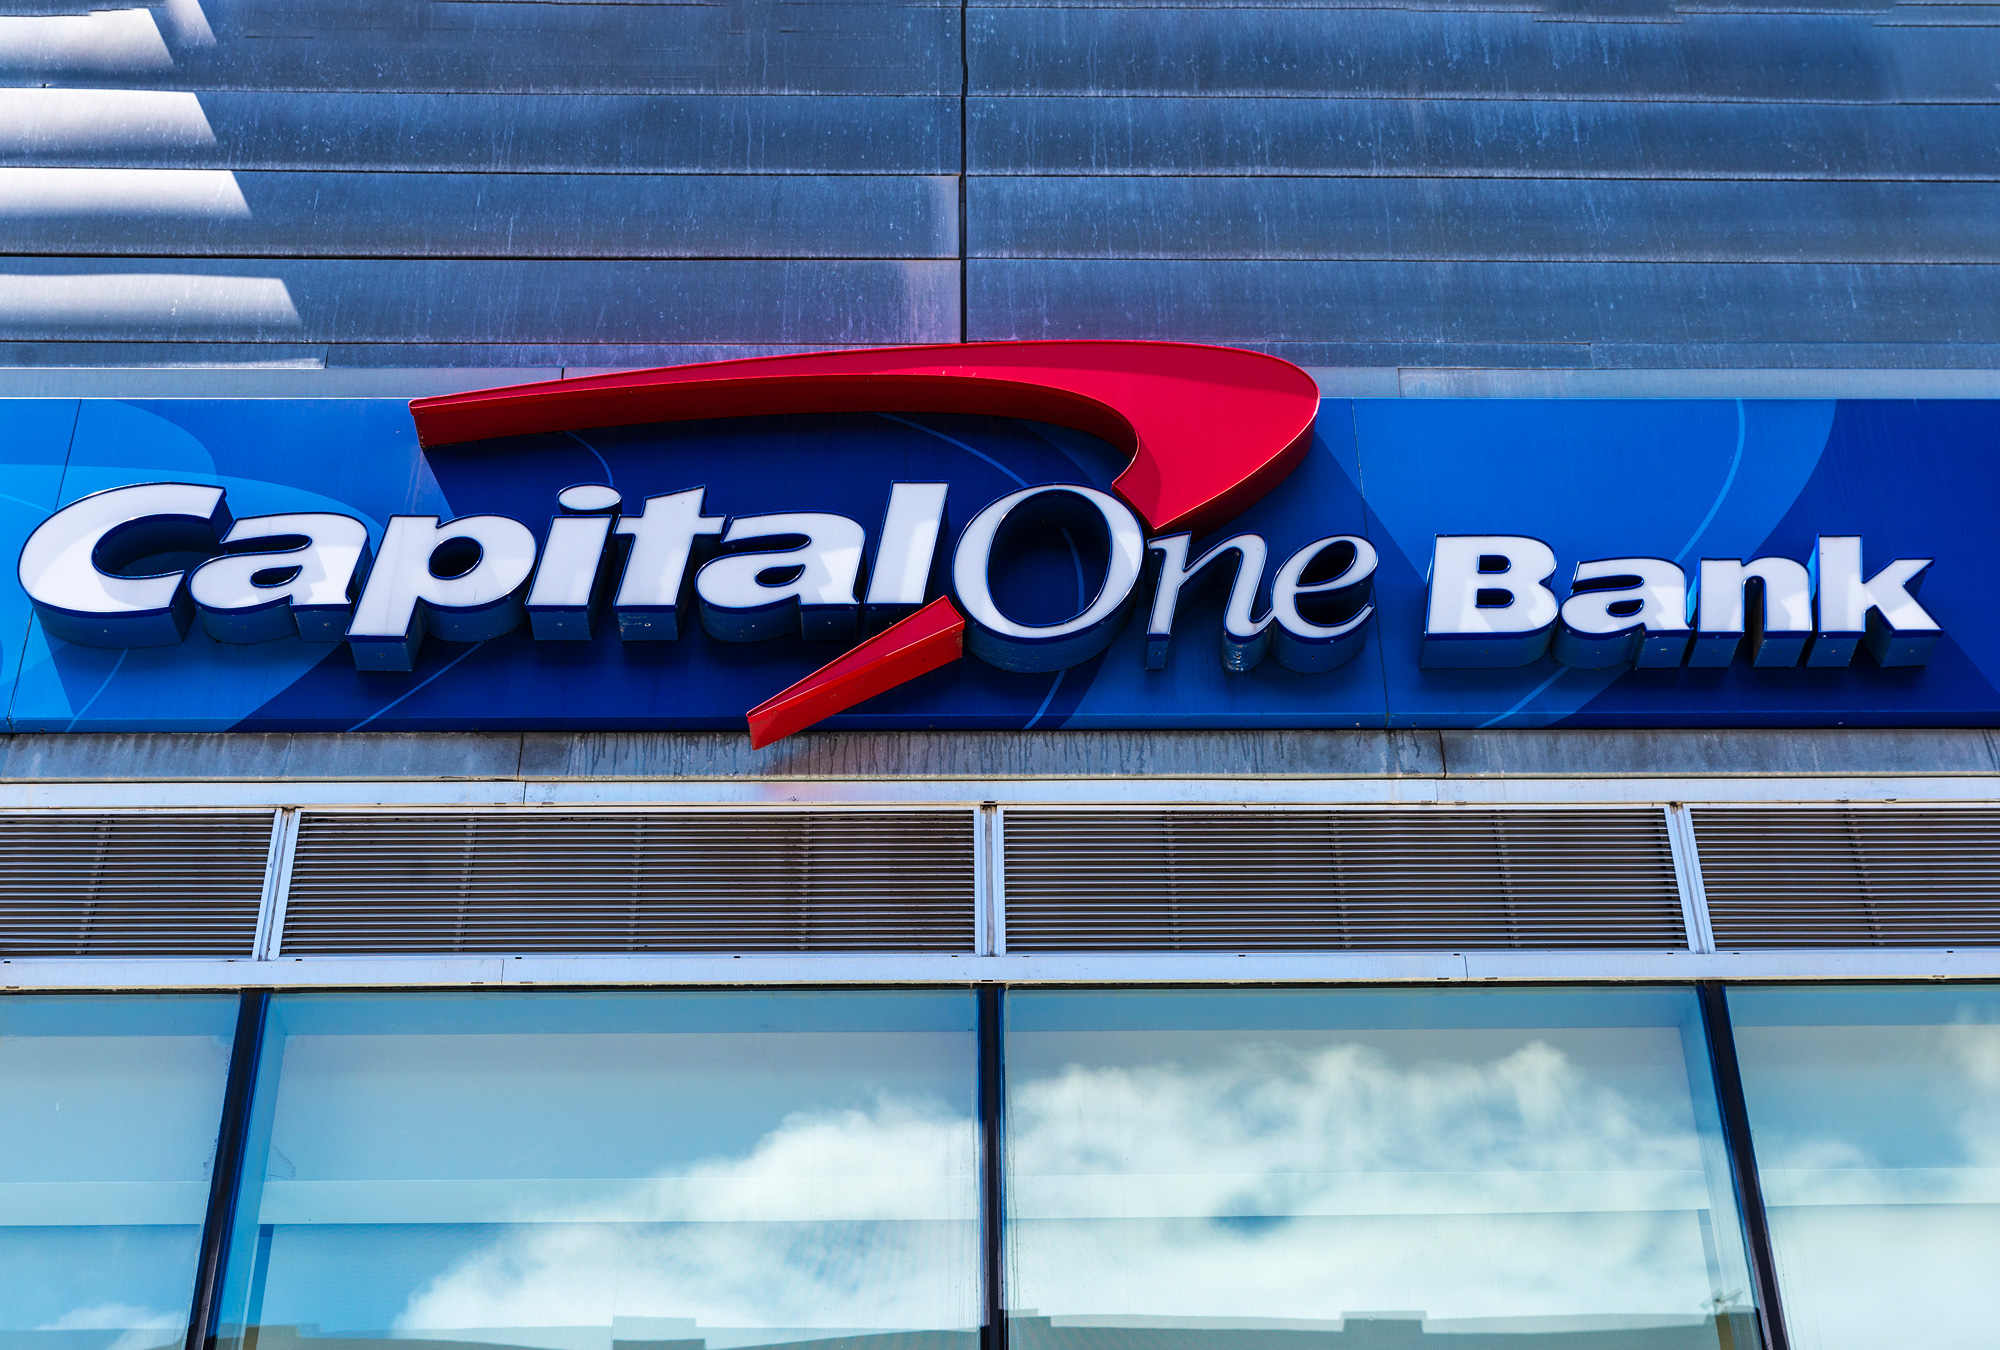 Capital One Bank operará desde México